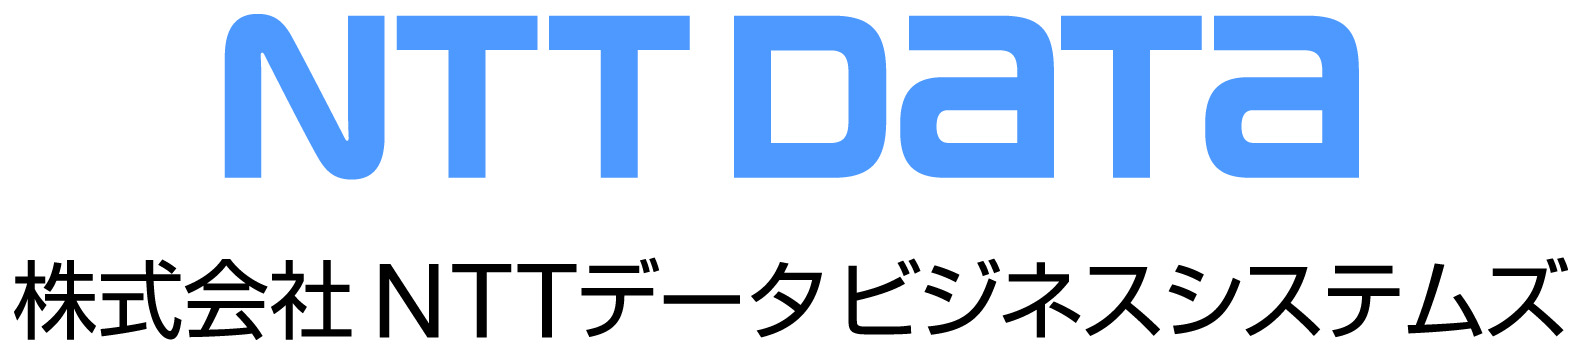 株式会社NTTデータビジネスシステムズ様